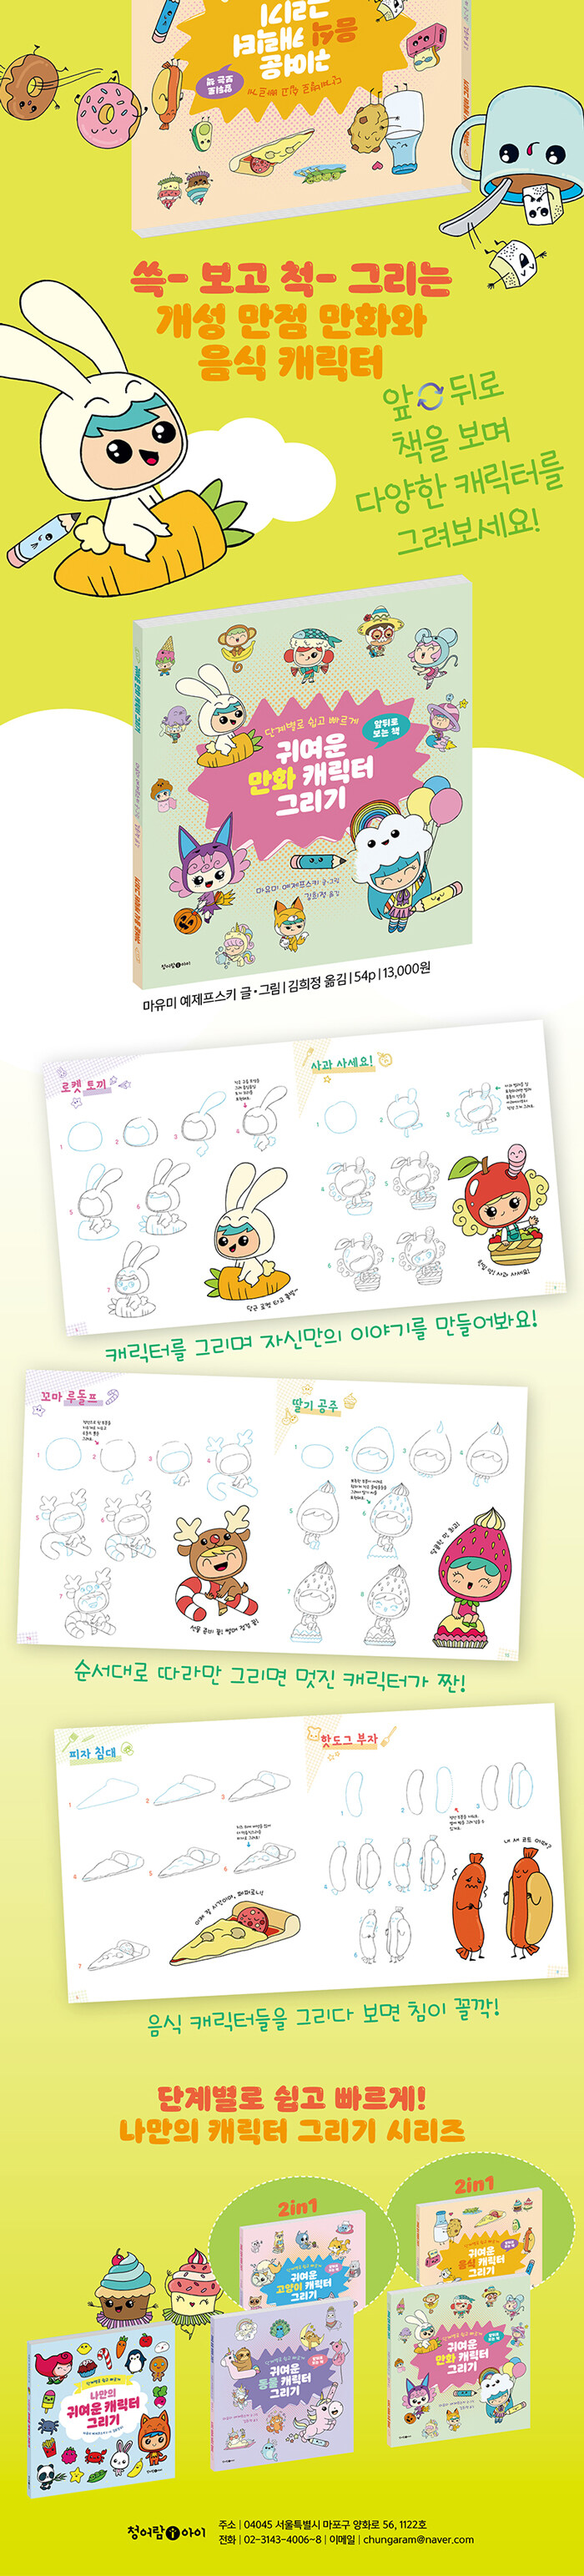 귀여운 만화 음식 캐릭터 그리기 - 밀크북